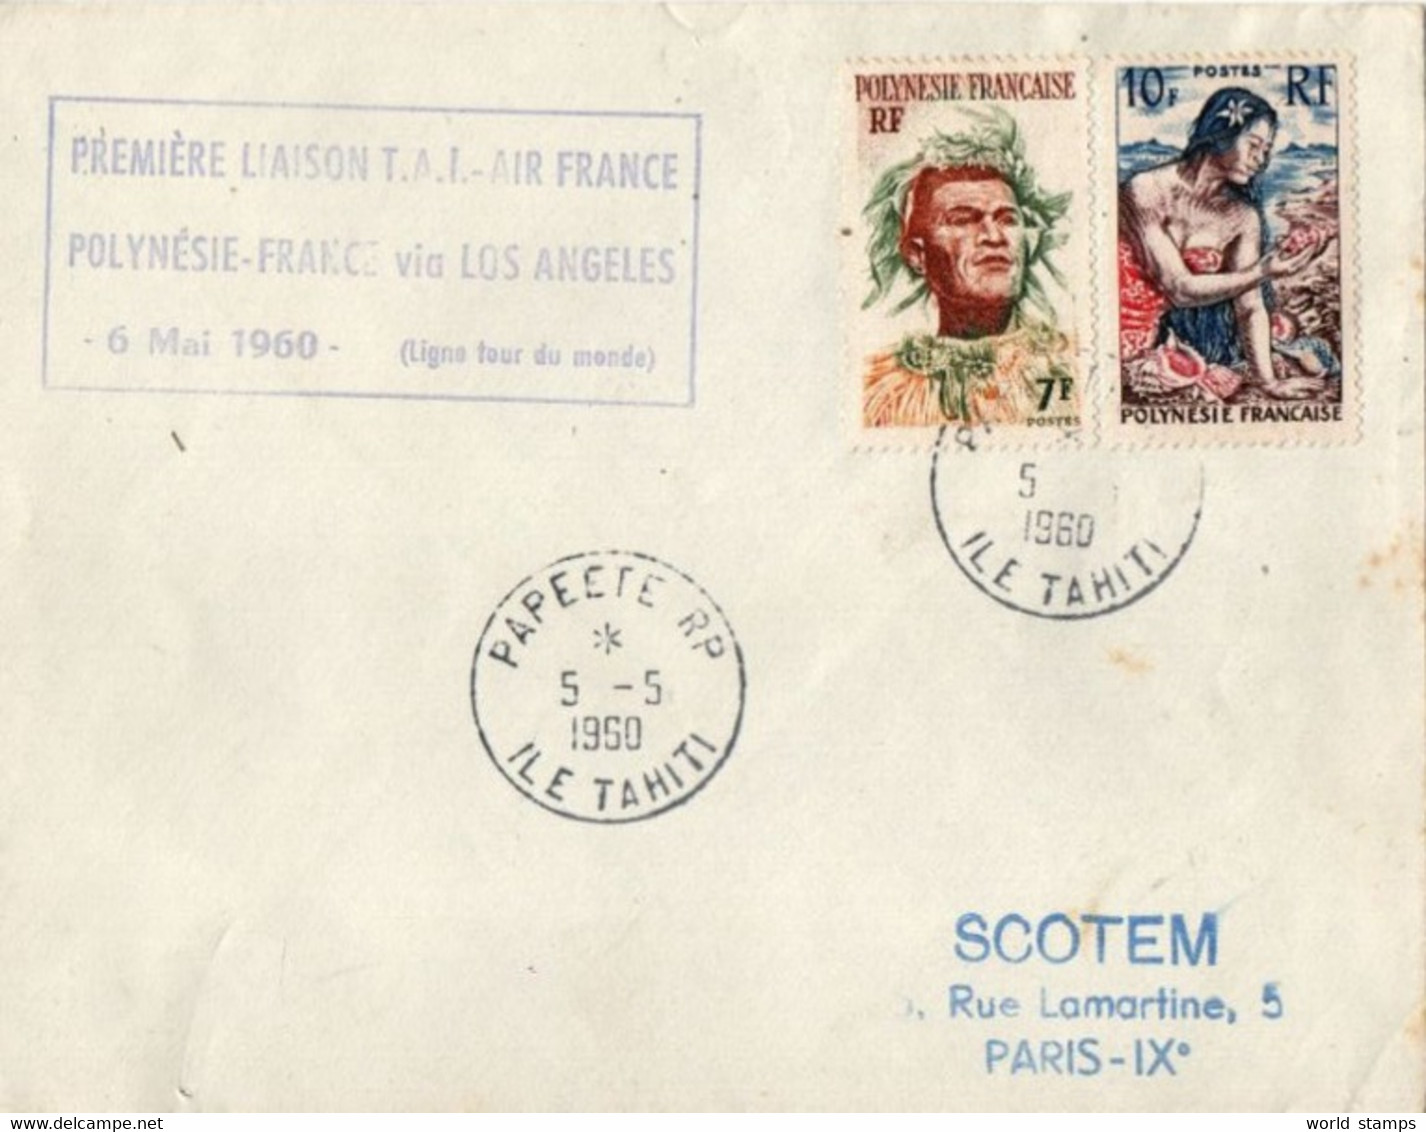 PREMIERE LIAISON T.A.I. AIR FRANCE POLYNESIE-FRANCE VIA LOS ANGELES 6 MAI 1960, DESTINATION PARIS - Storia Postale